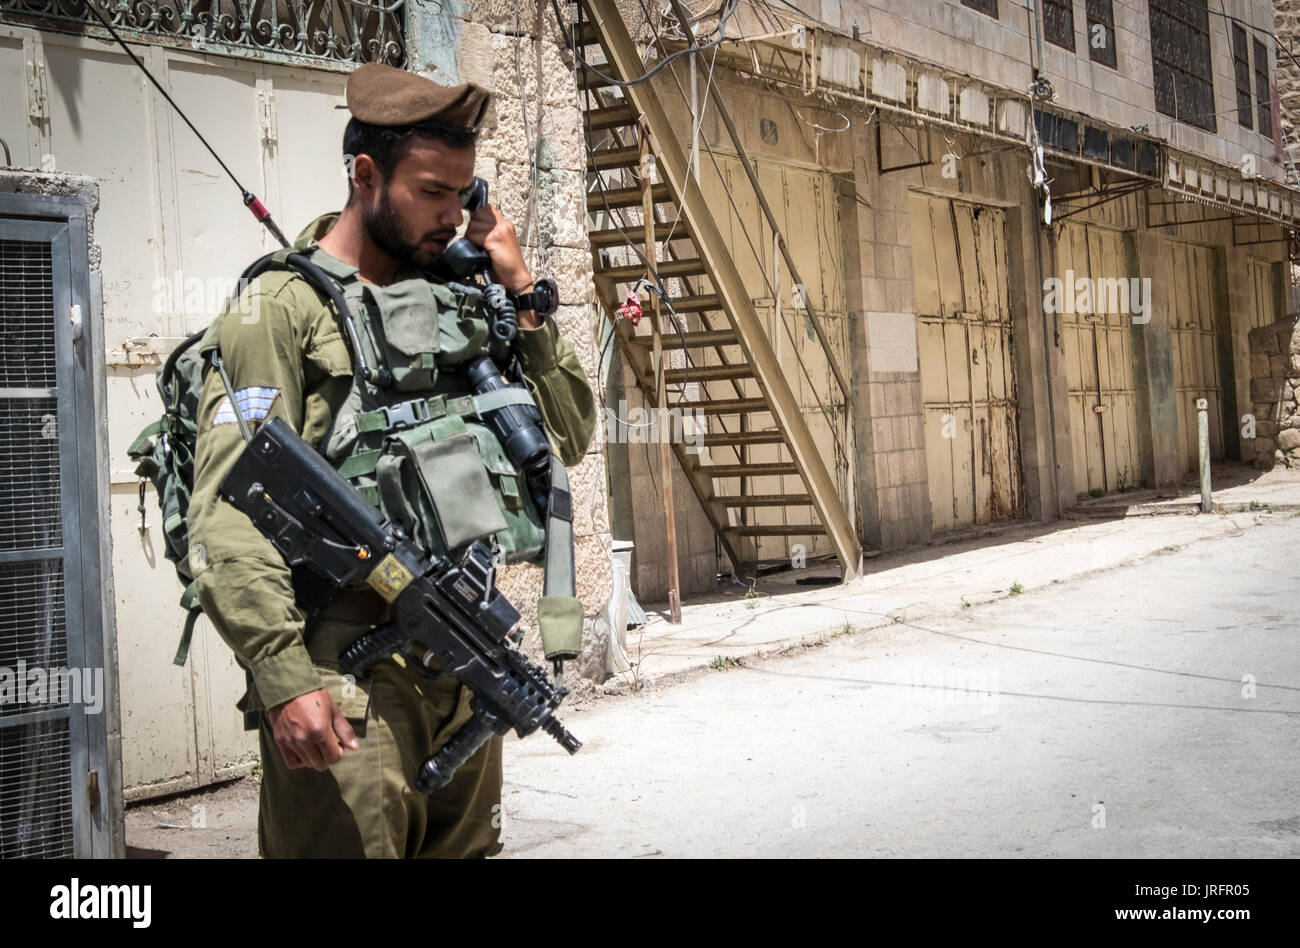 Soldato israeliano a guardia di un ex bustiling Hebron Market street ora chiusa ai palestinesi a causa di una terra grab di 850 coloni israeliani nelle vicinanze Foto Stock